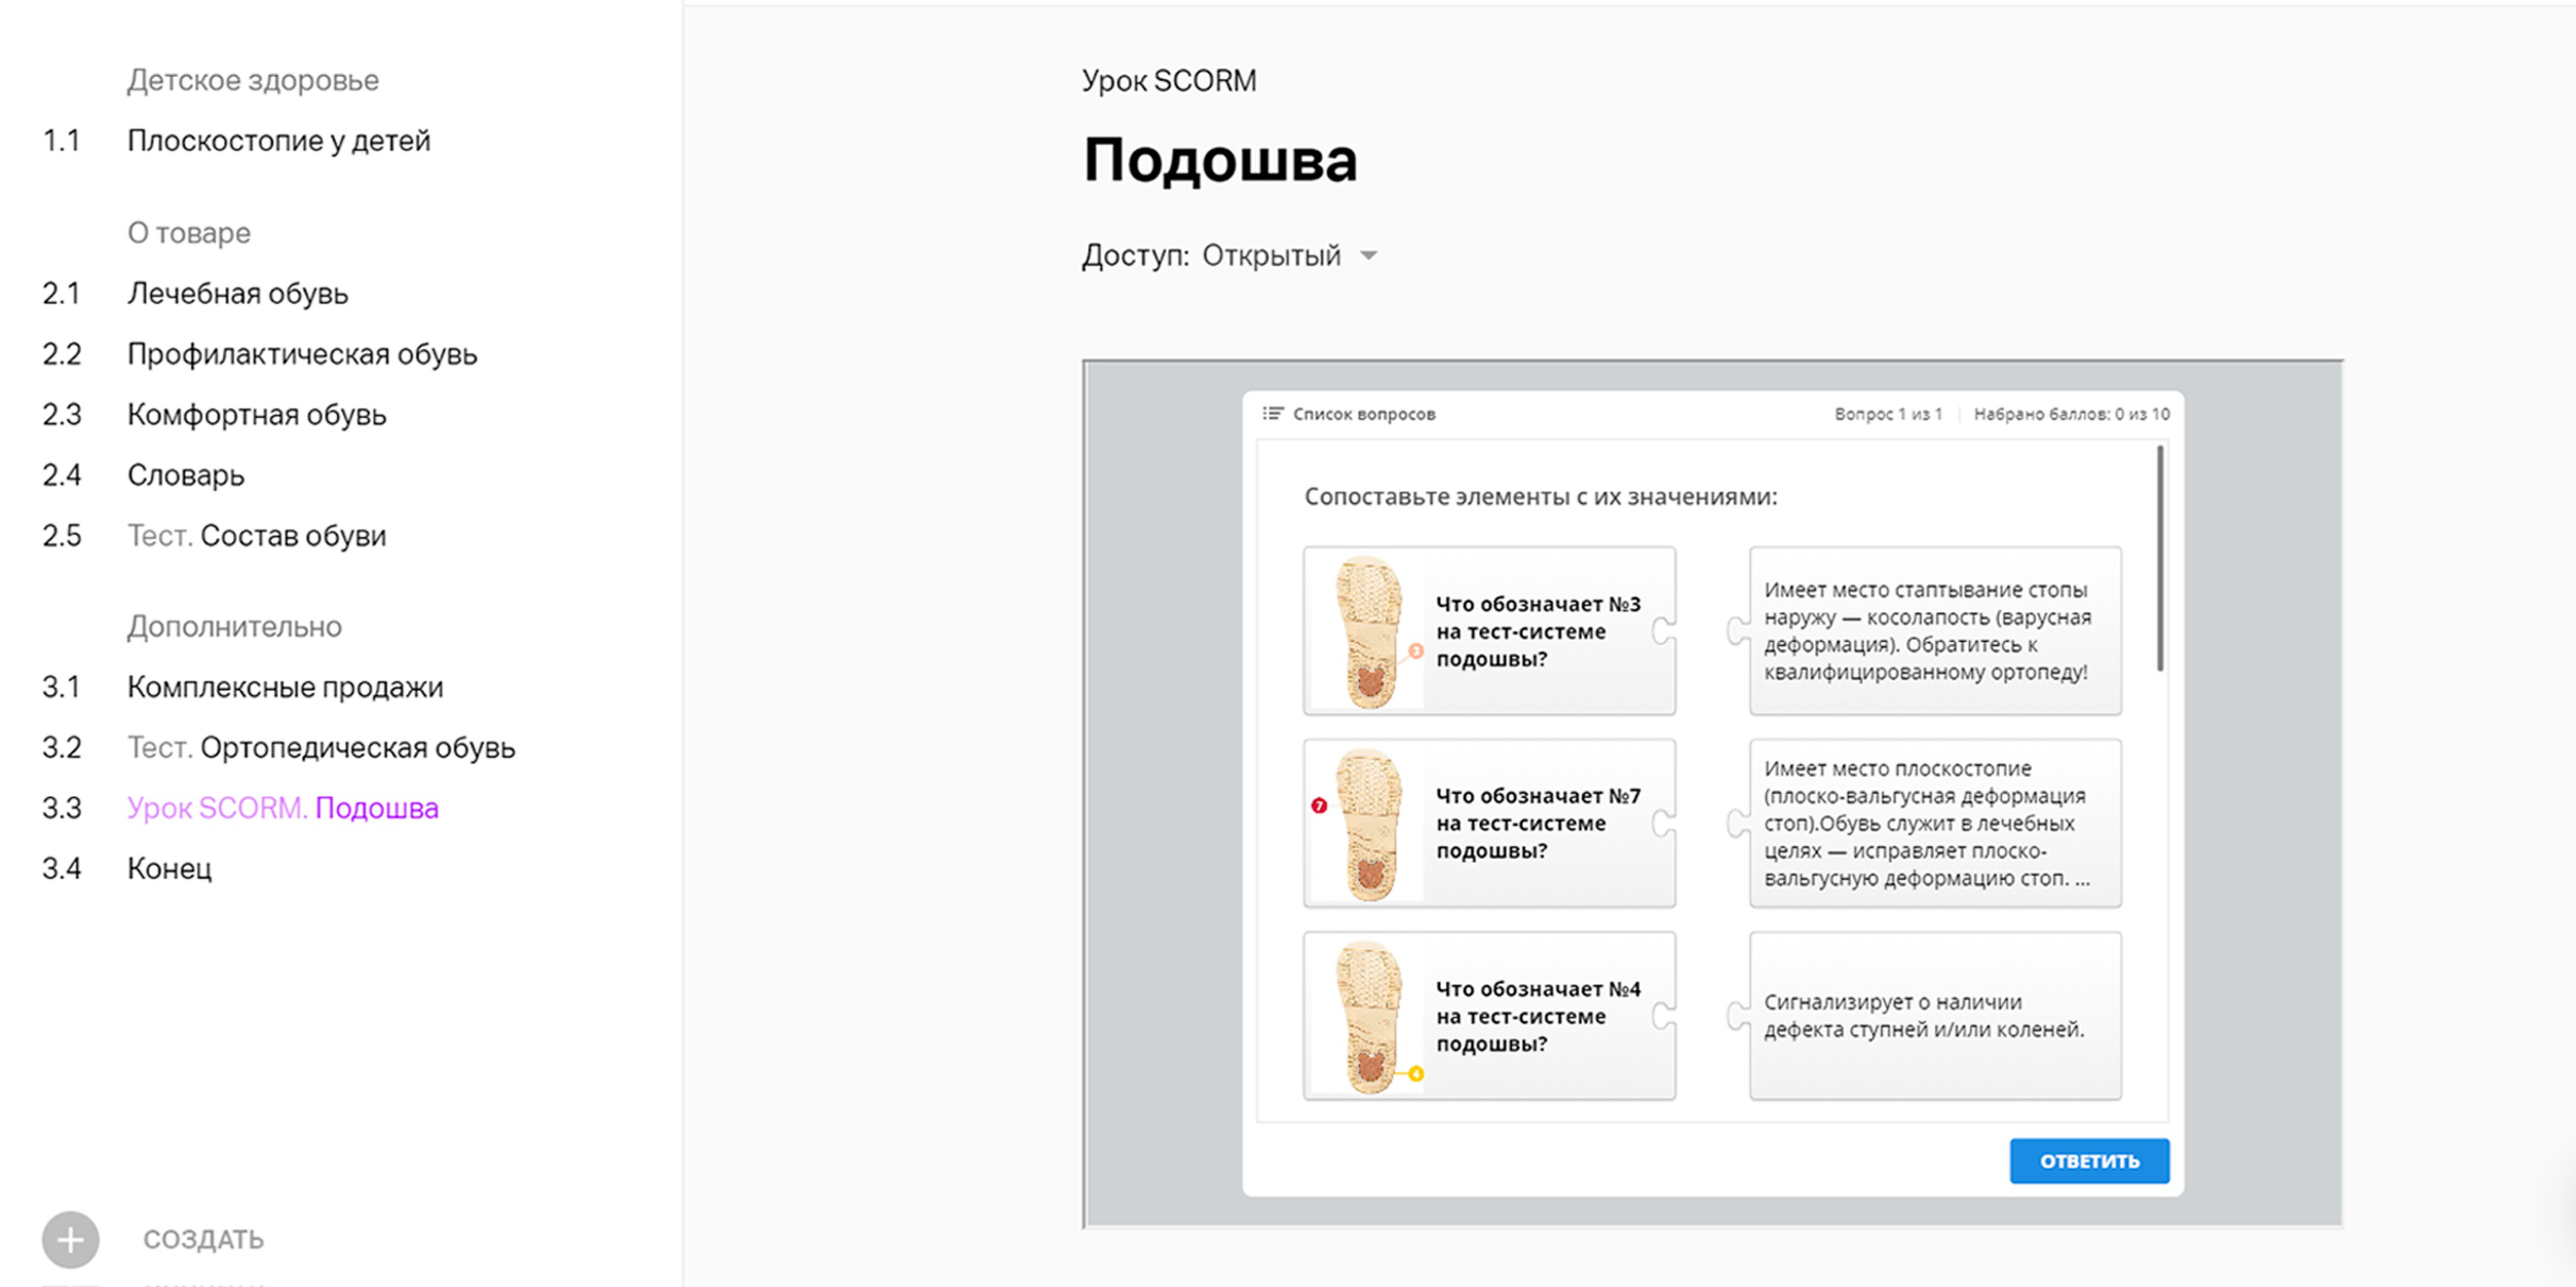 My mts link ru 54925035 855103216. Вкладака вопросы в webiar ru. Вкладака вопросы в Webinar ru.